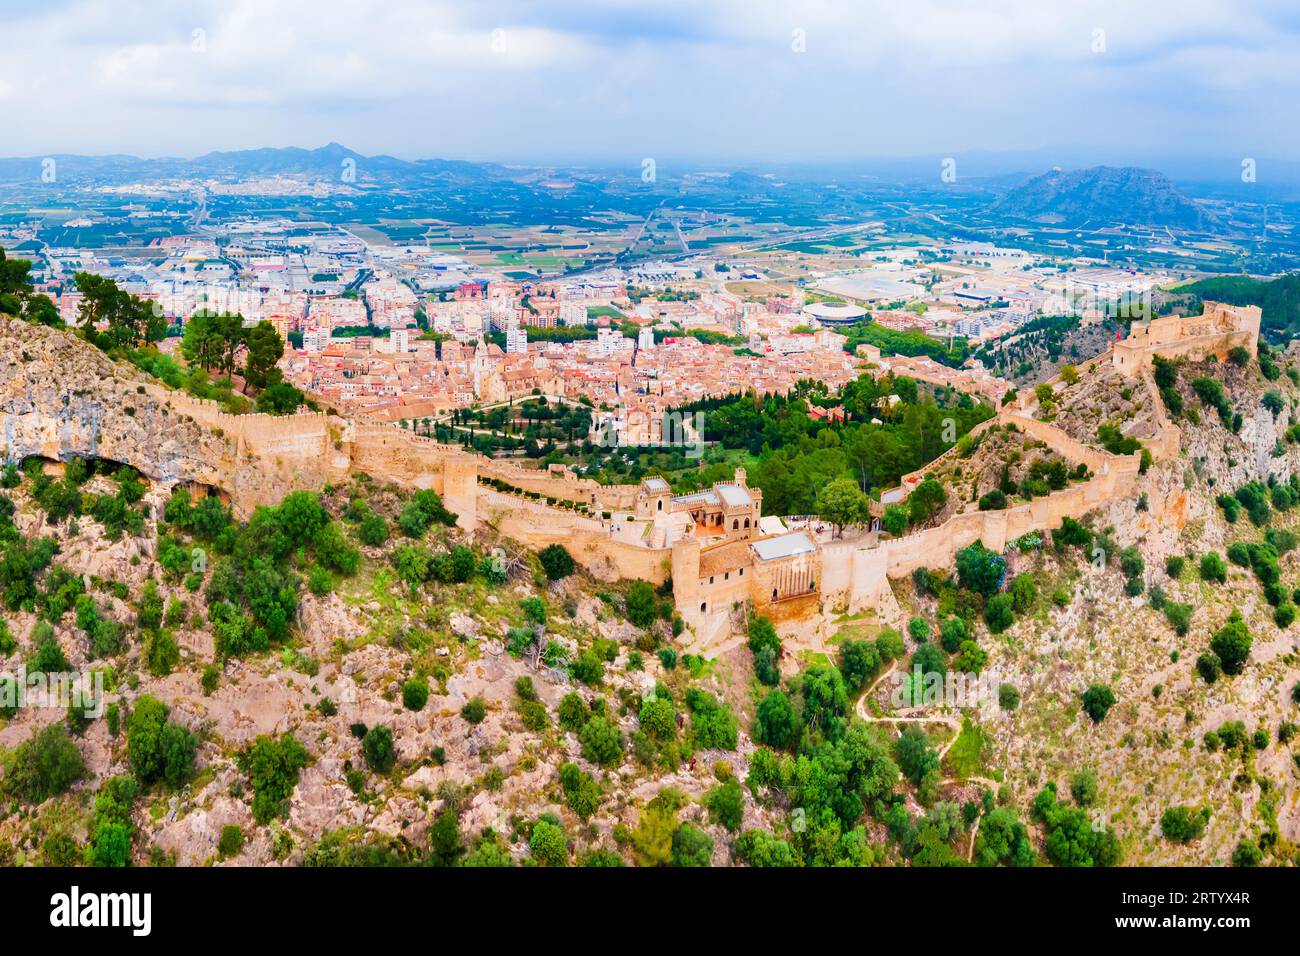 Vue panoramique aérienne du château de Xativa. Castillo de Jativa est un château situé dans la ville de Xativa près de Valence en Espagne. Banque D'Images